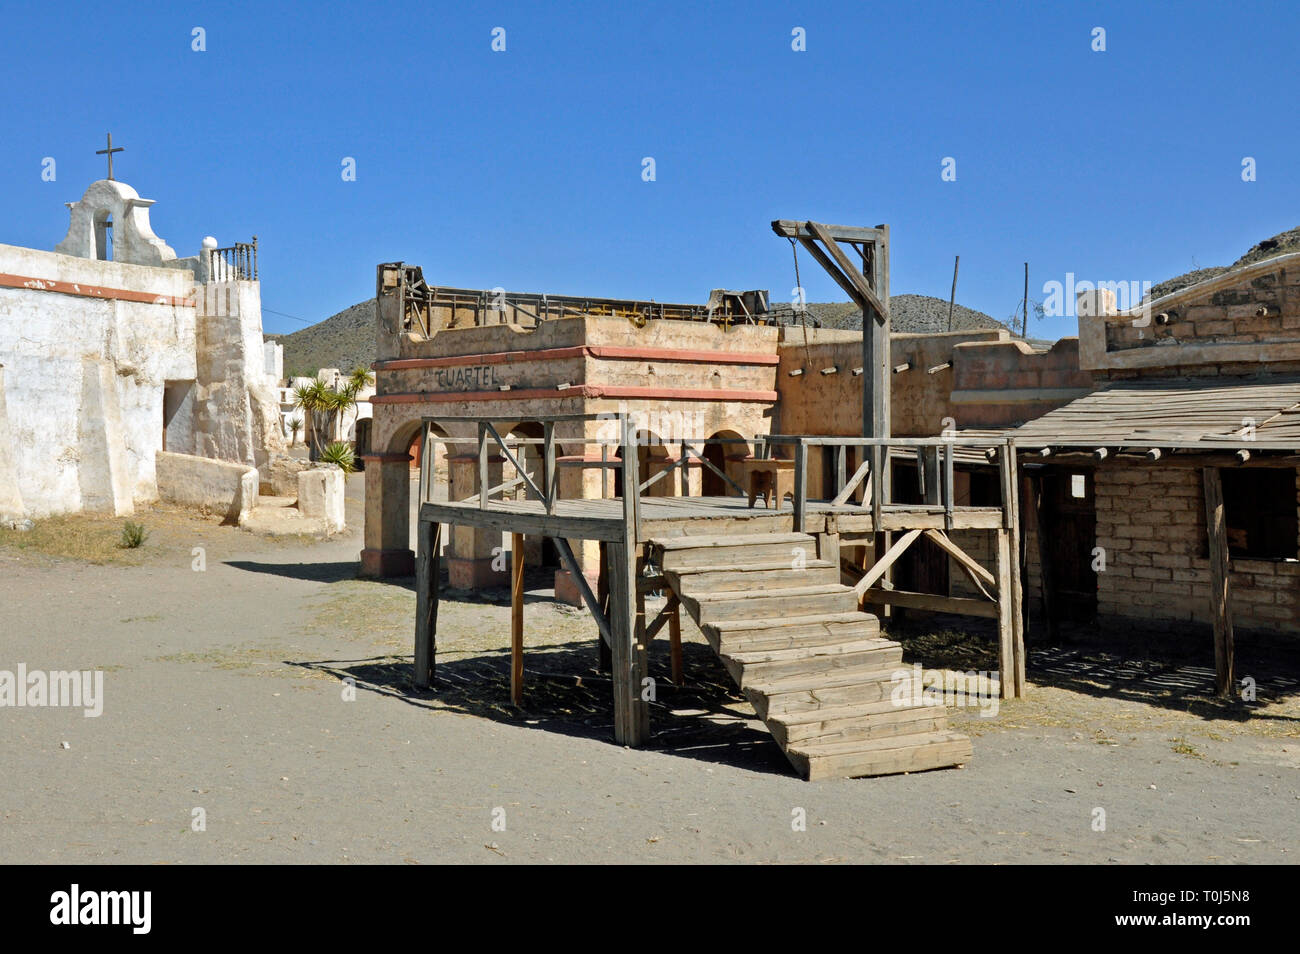 L'échafaud à Fort Bravo Western-style theme park à Tabernas à Almeria. Auparavant une série de films hollywoodiens, il est maintenant une attraction touristique majeure. Banque D'Images